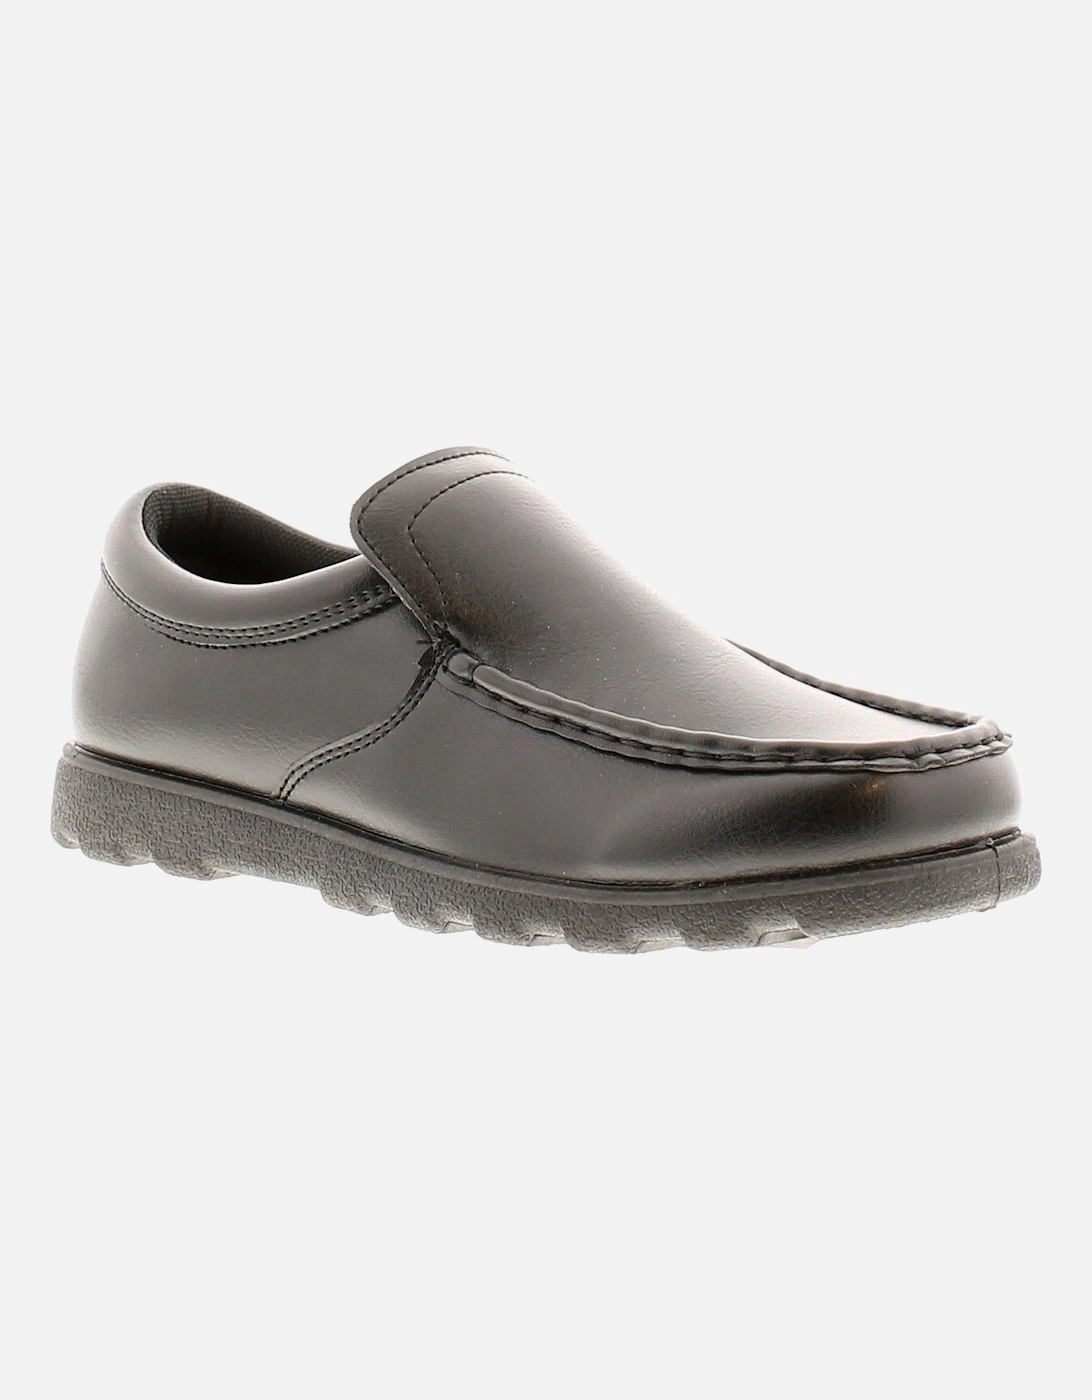 Older Boys Shoes School Valley Jnr Loafer Slip On Black UK Size, 6 of 5